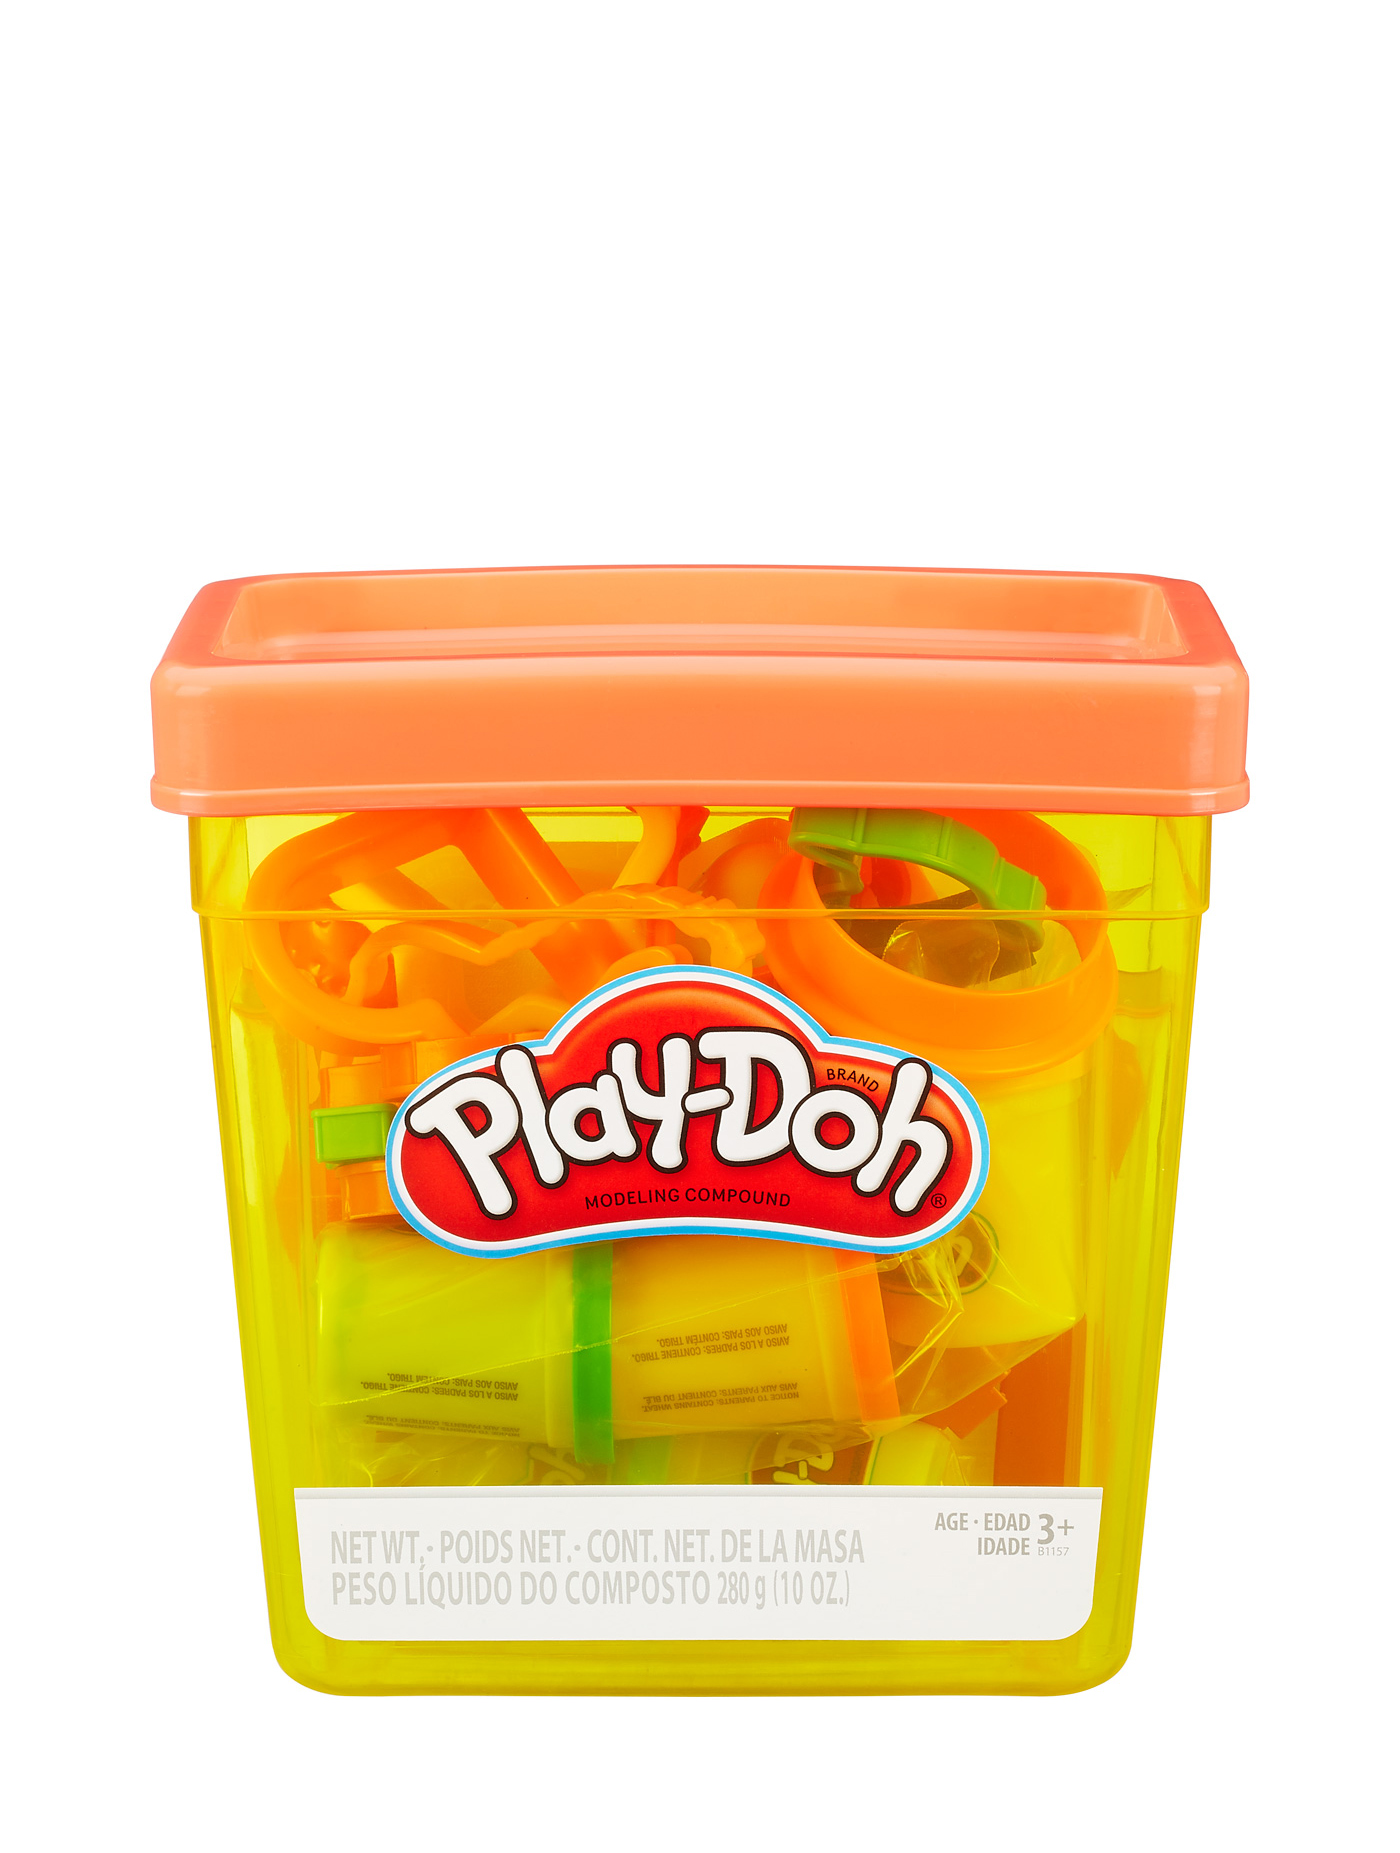 [Discontinued]ชุดแป้งโดว์ Play-Doh รุ่น B1157